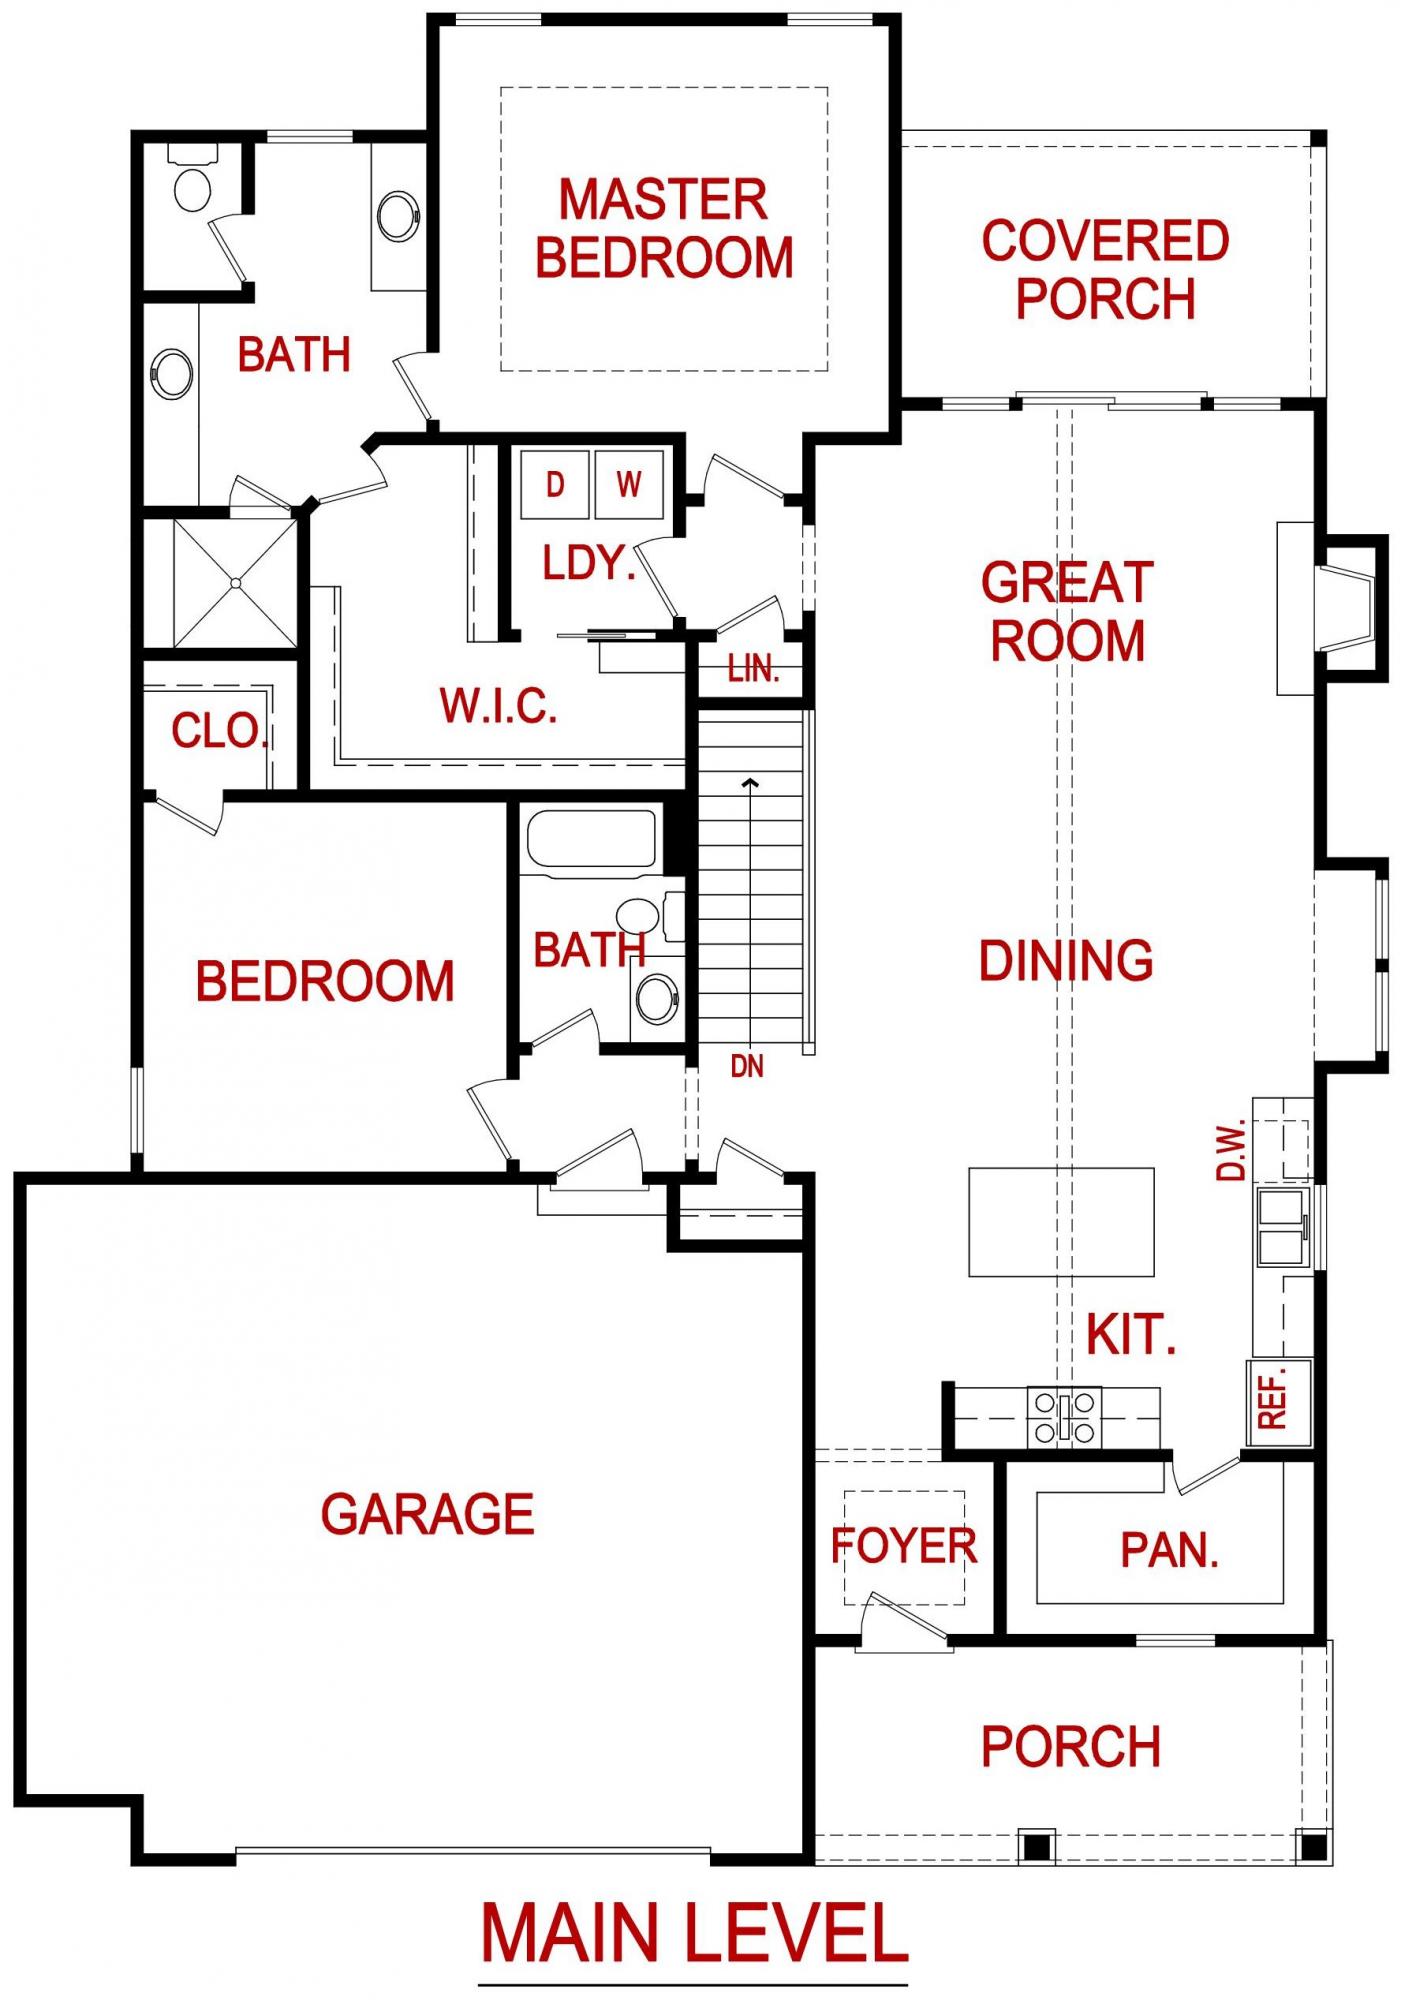 Main level floor plan for 7425 Ash St. Prairie Village, KS from Lambie custom homes